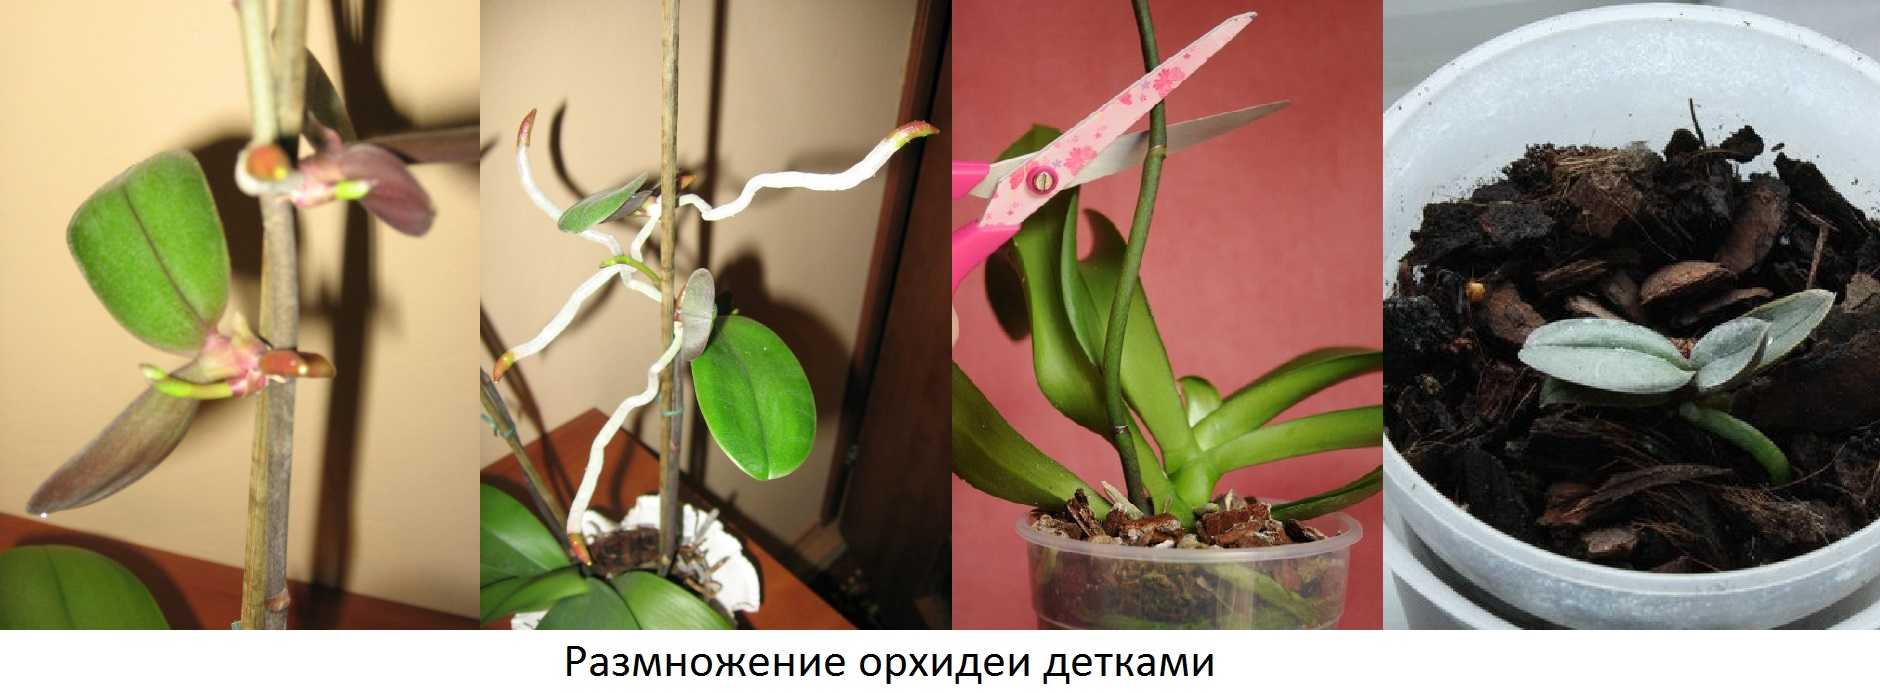 Как размножить орхидею в домашних условиях через цветонос: каким образом выбрать стрелку, как обрезать и посадить в емкость с водой, когда перемещать в горшок?